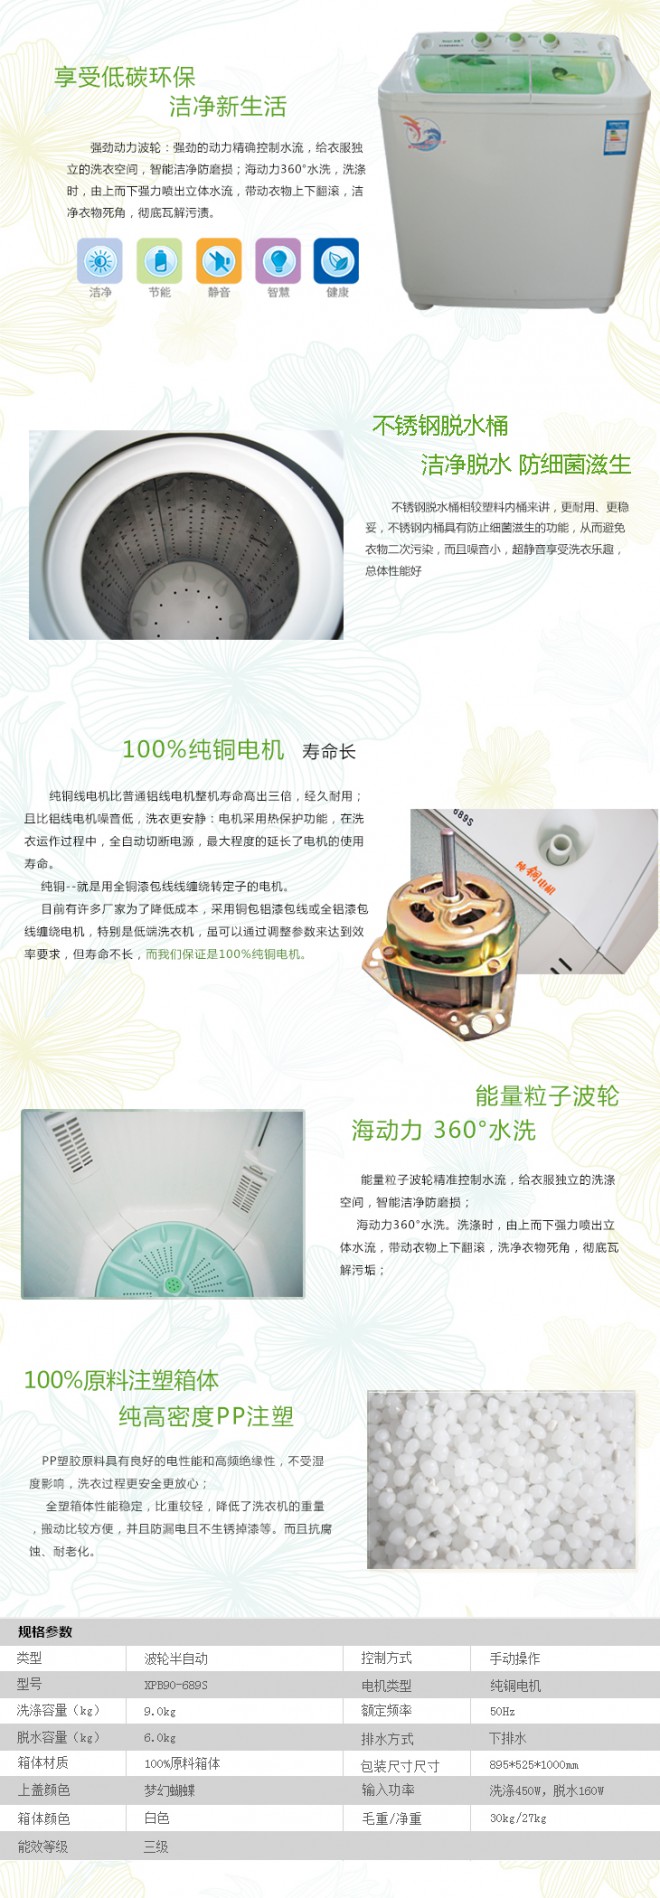 XQB90—689s(梦幻蝴蝶) XQB90—689s(梦幻蝴蝶)-产品中心-海普洗衣机